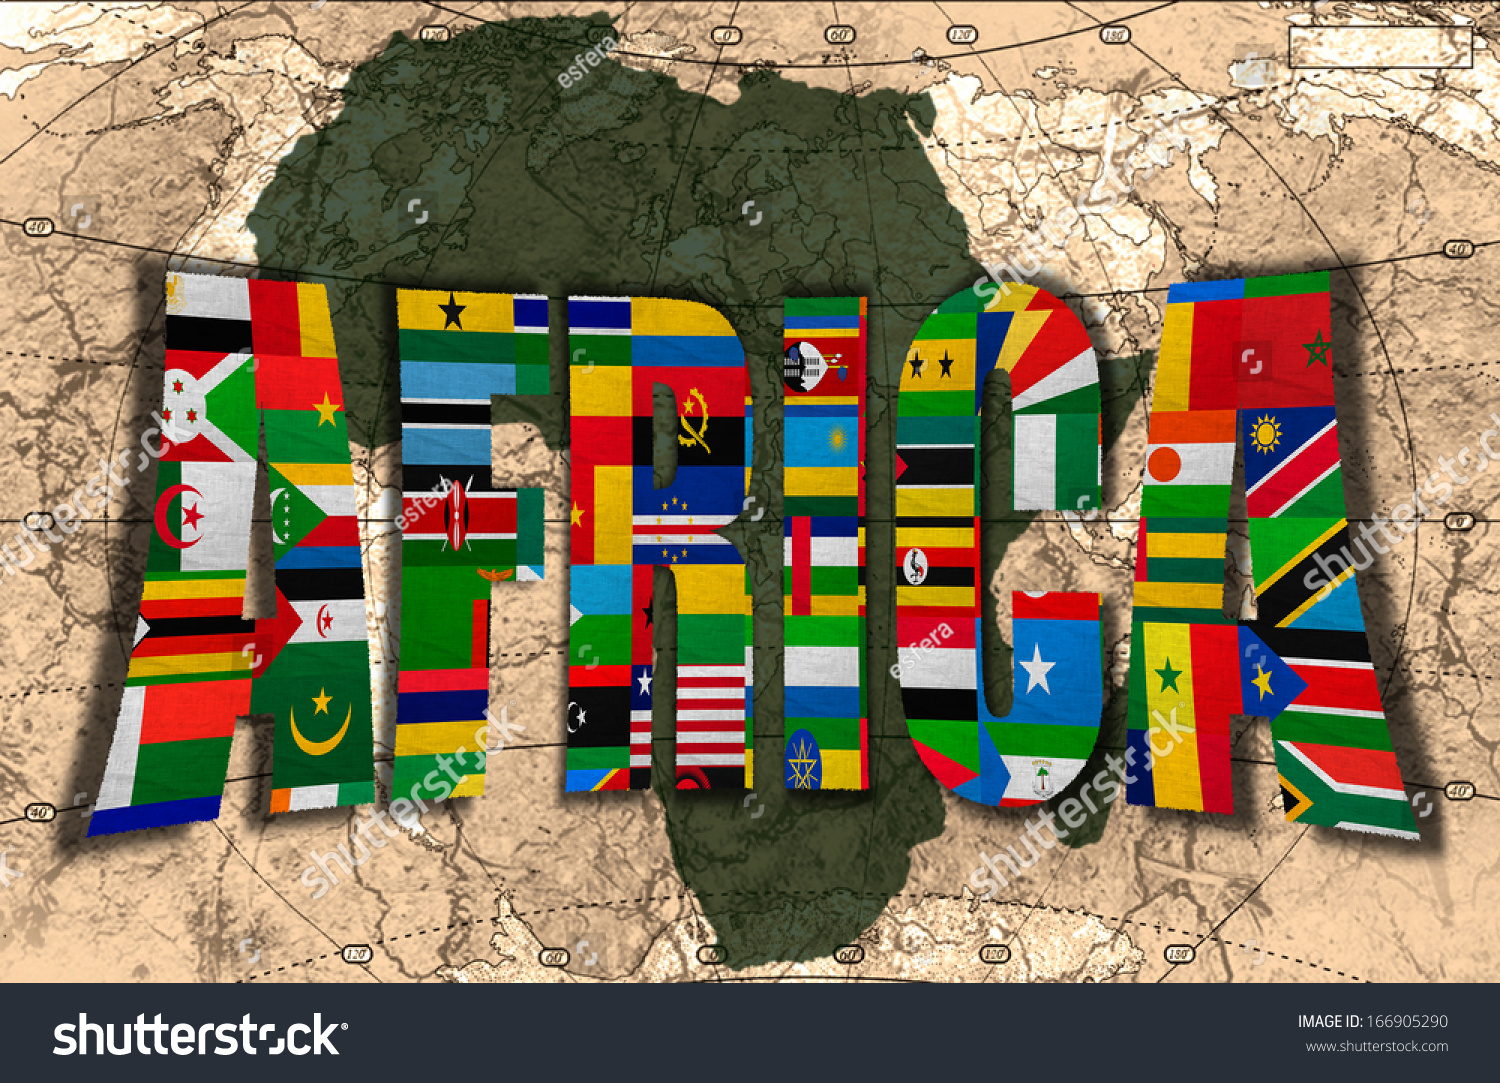 Флаг Африки Фото Картинки